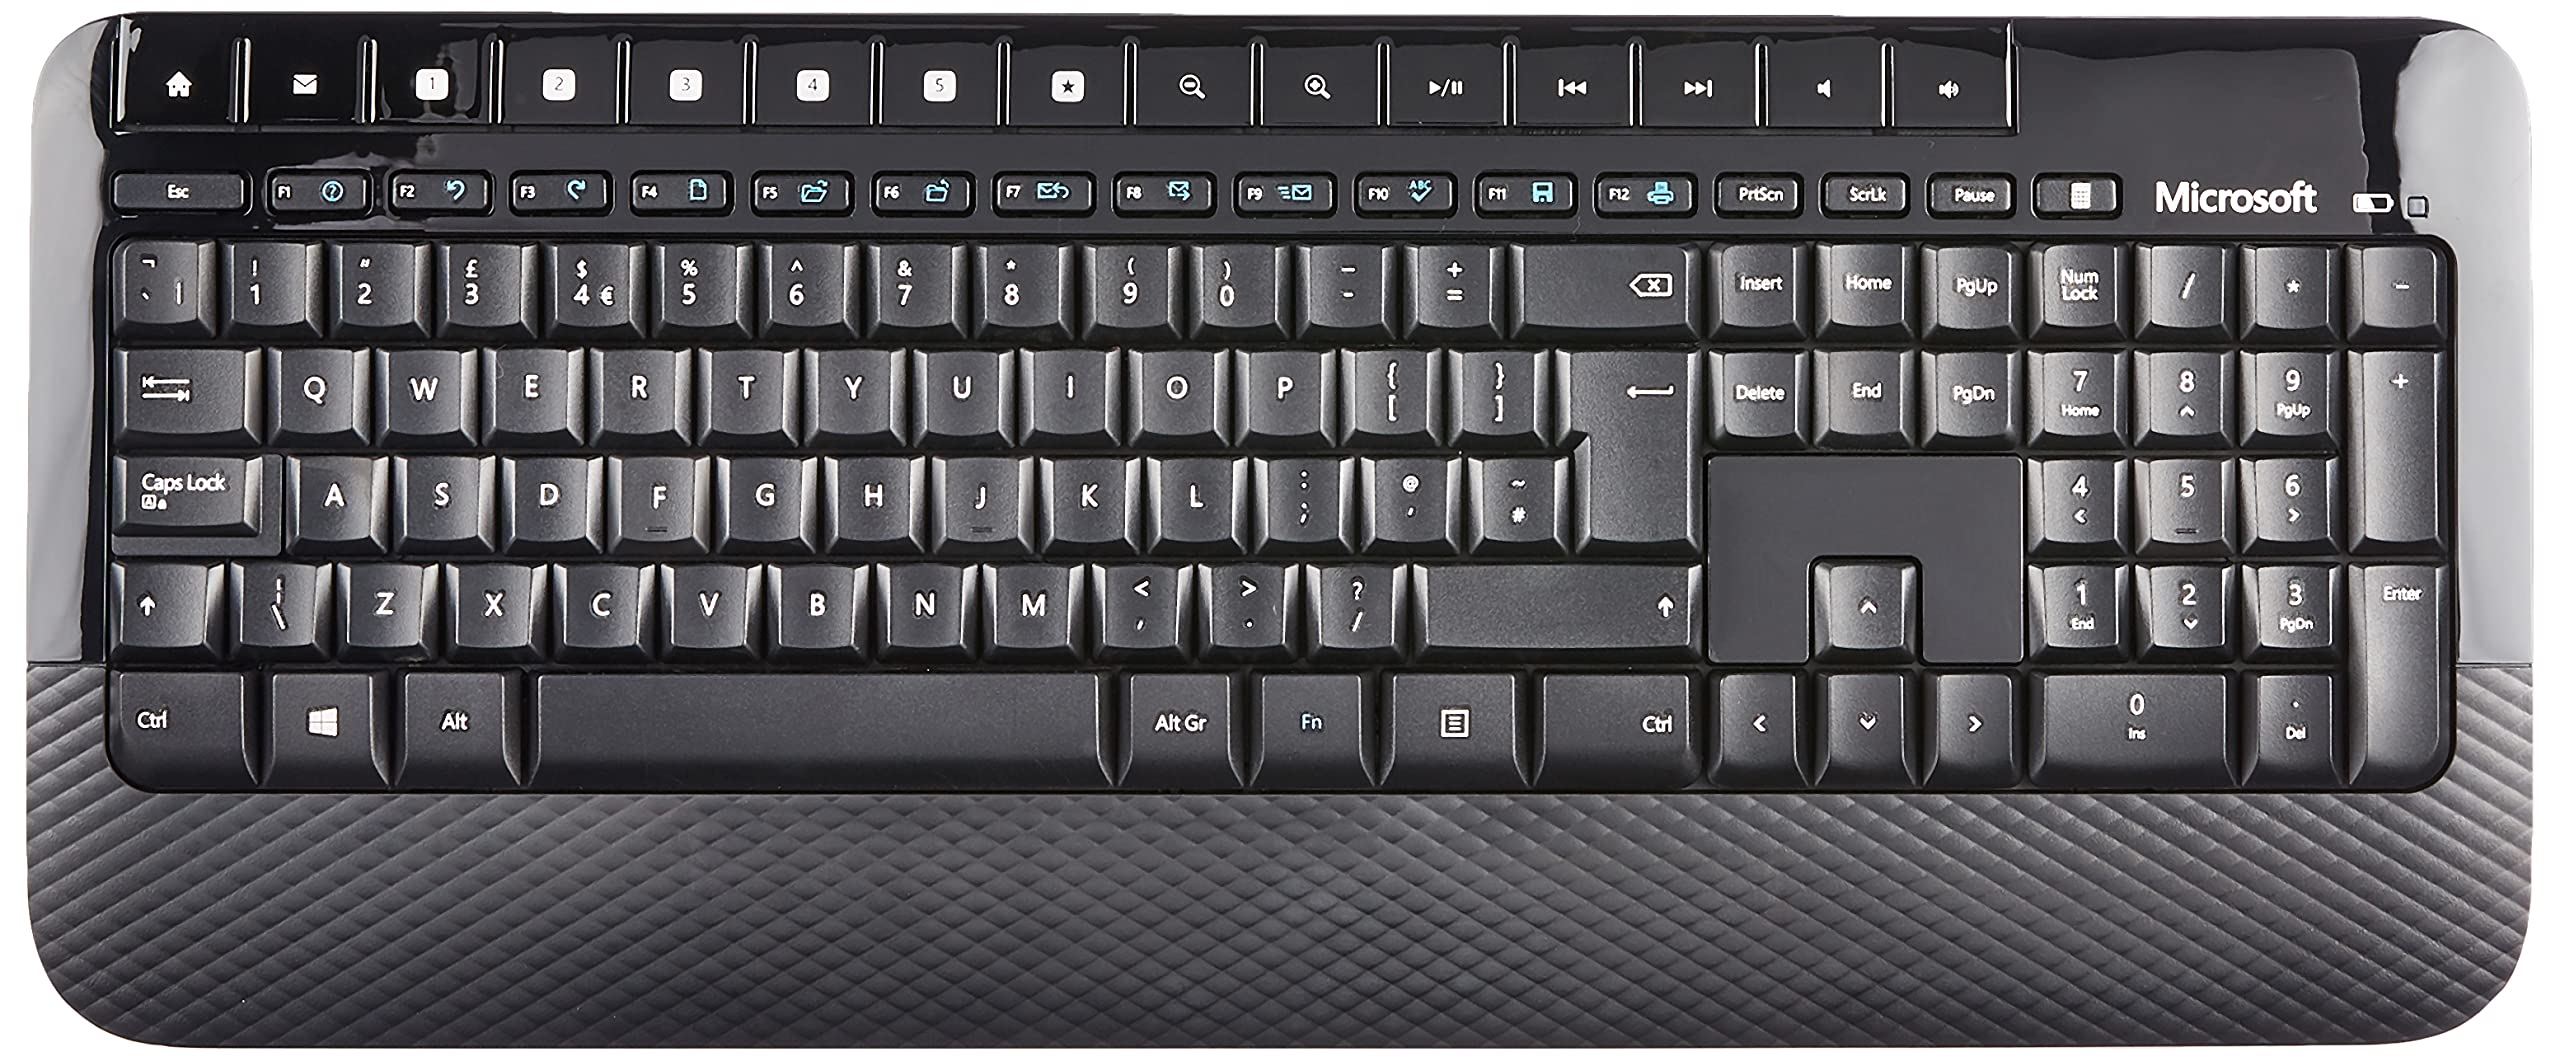 Microsoft Wireless Desktop 2000 Keyboard and Mouse Set, UK Layout - Black